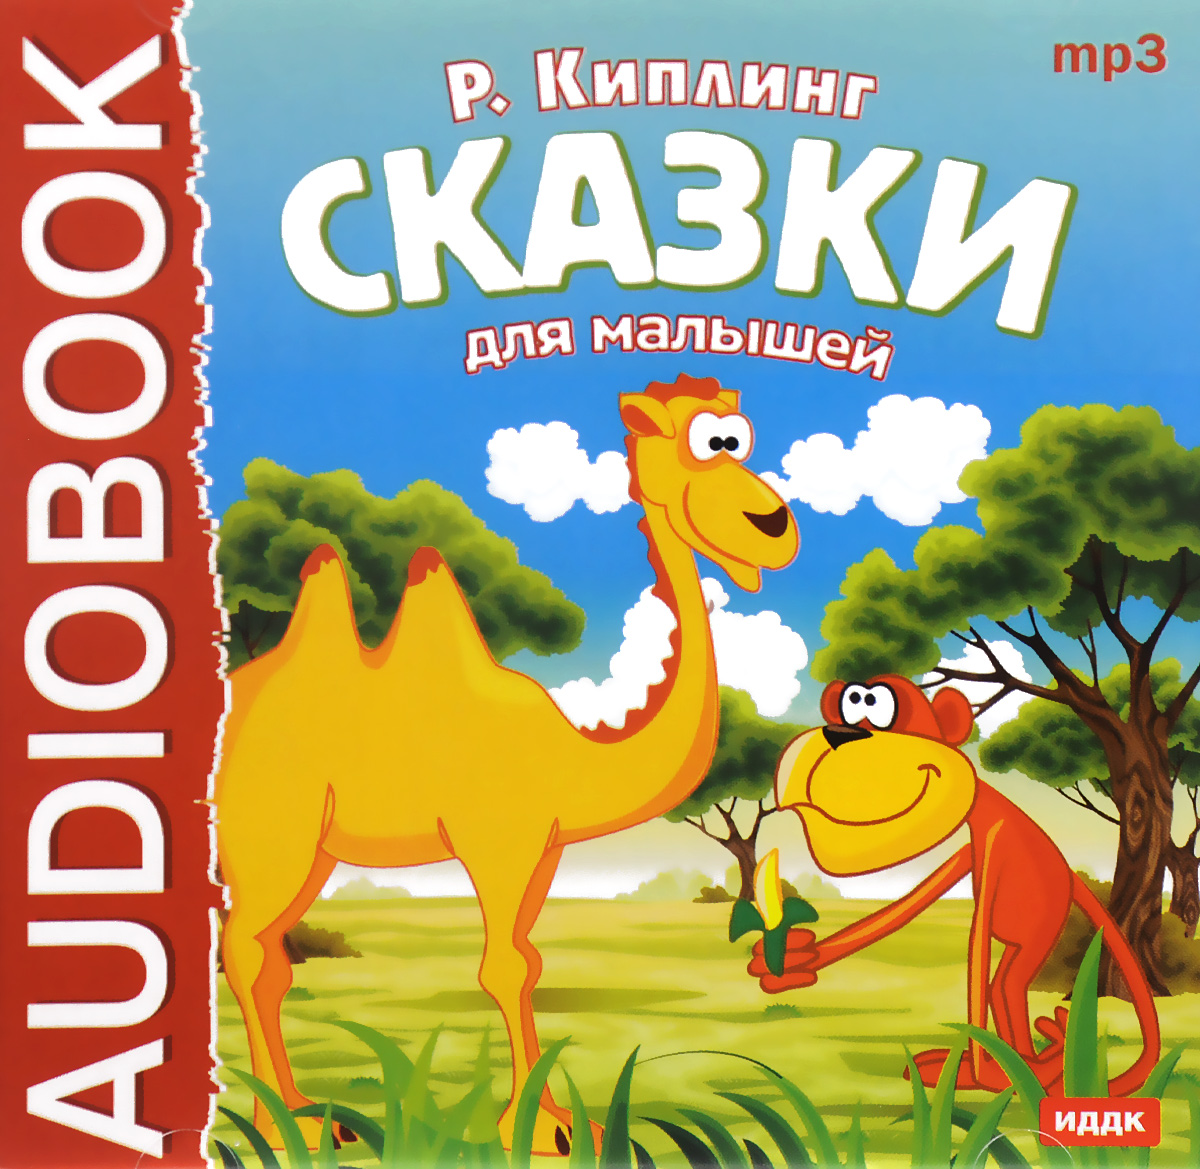 Сказки для малышей (аудиокнига MP3)